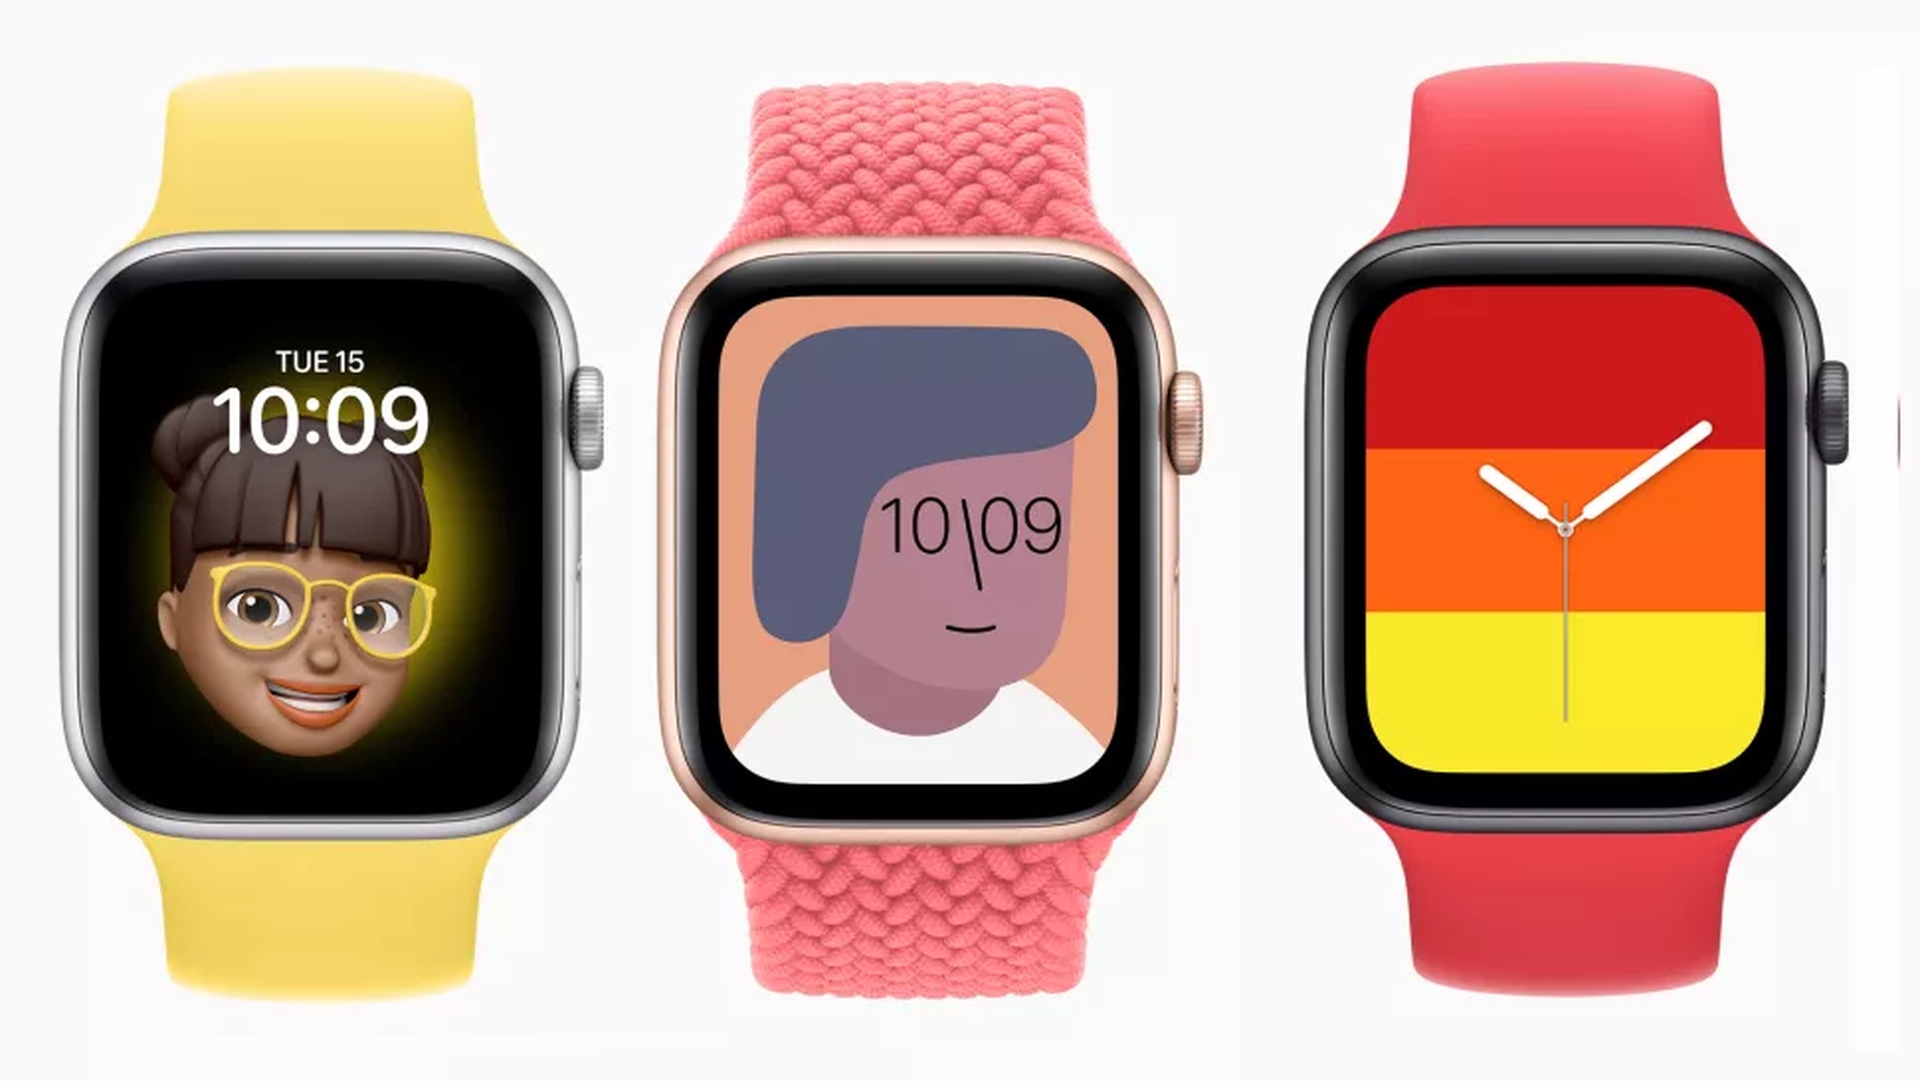 Aujourd'hui, nous allons passer en revue notre comparaison Apple Watch vs Fitbit, afin que vous puissiez connaître tous les avantages et inconvénients et prendre une décision éclairée avant d'acheter.